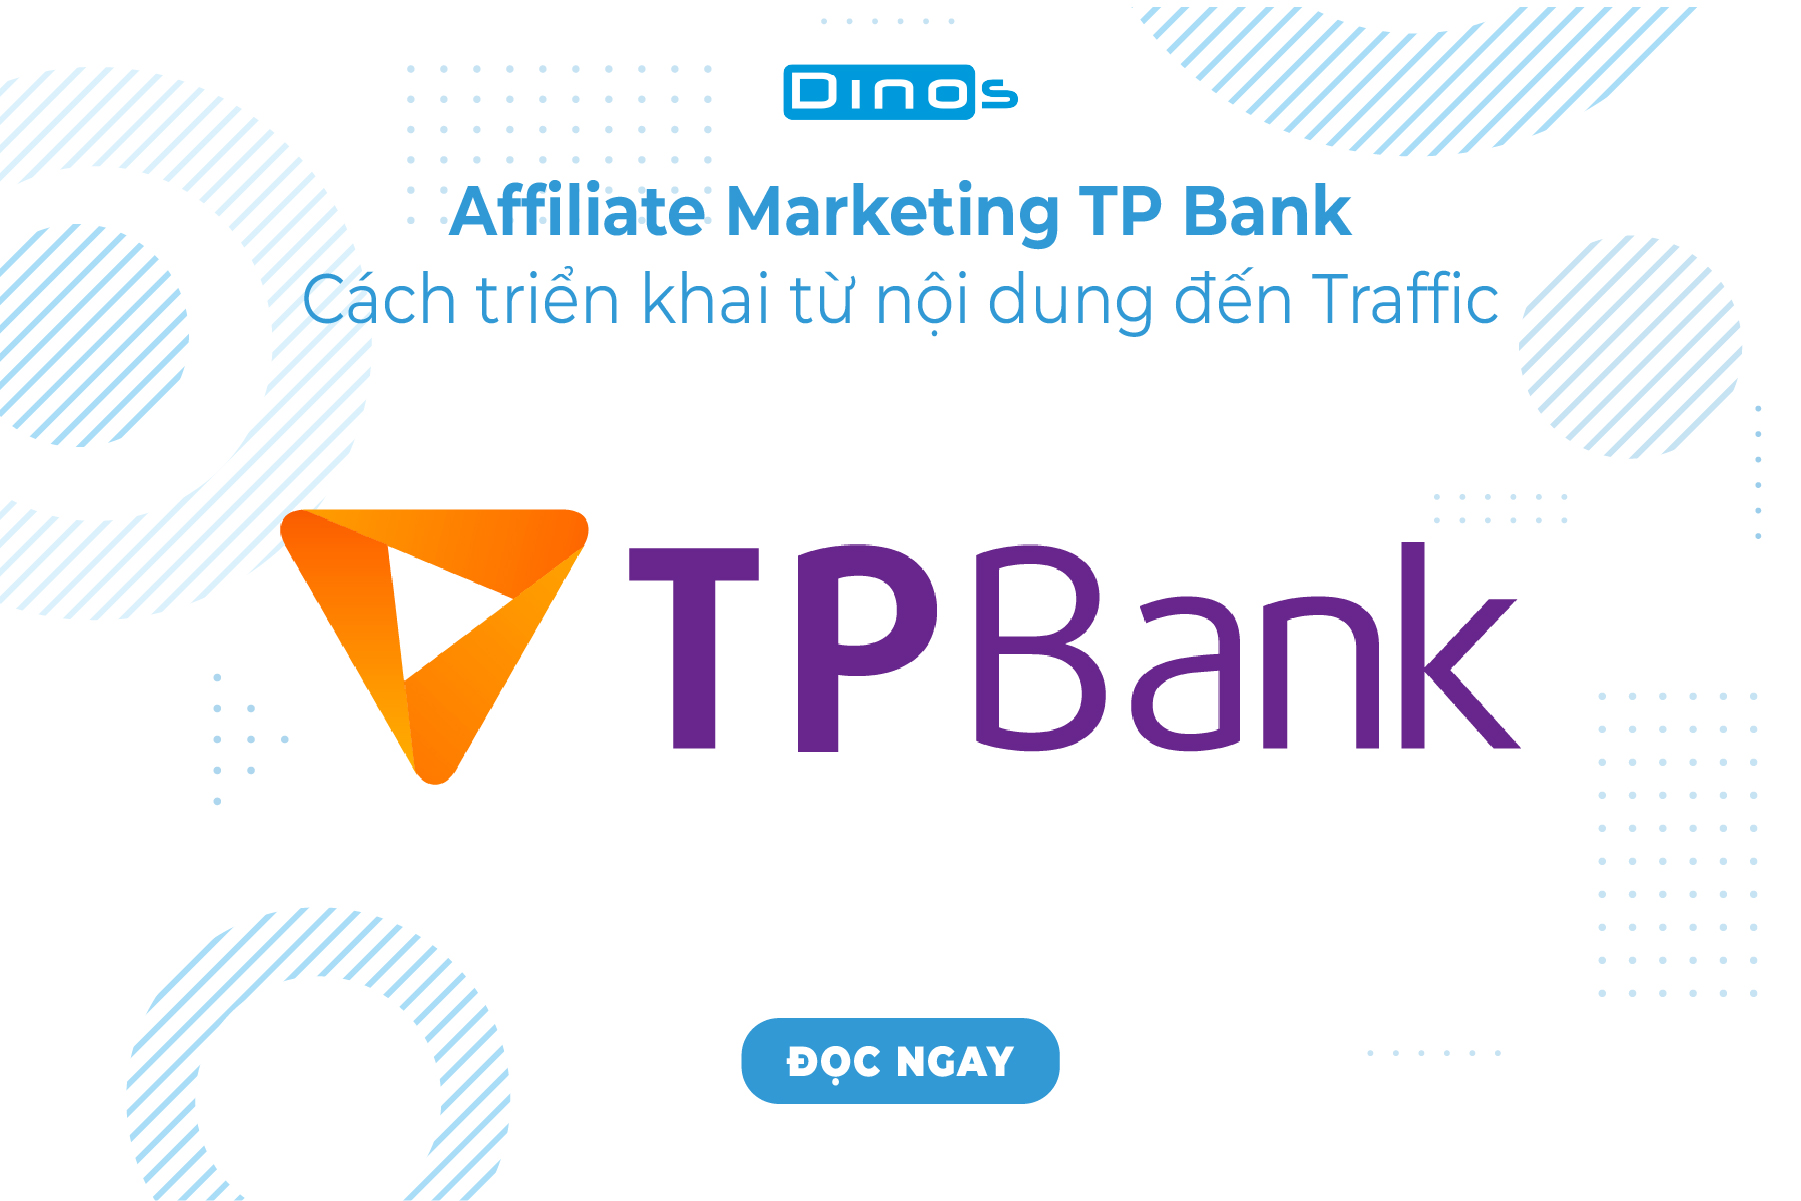 Cách Triển Khai Affiliate Marketing TP Bank Từ Nội Dung Đến Traffic 